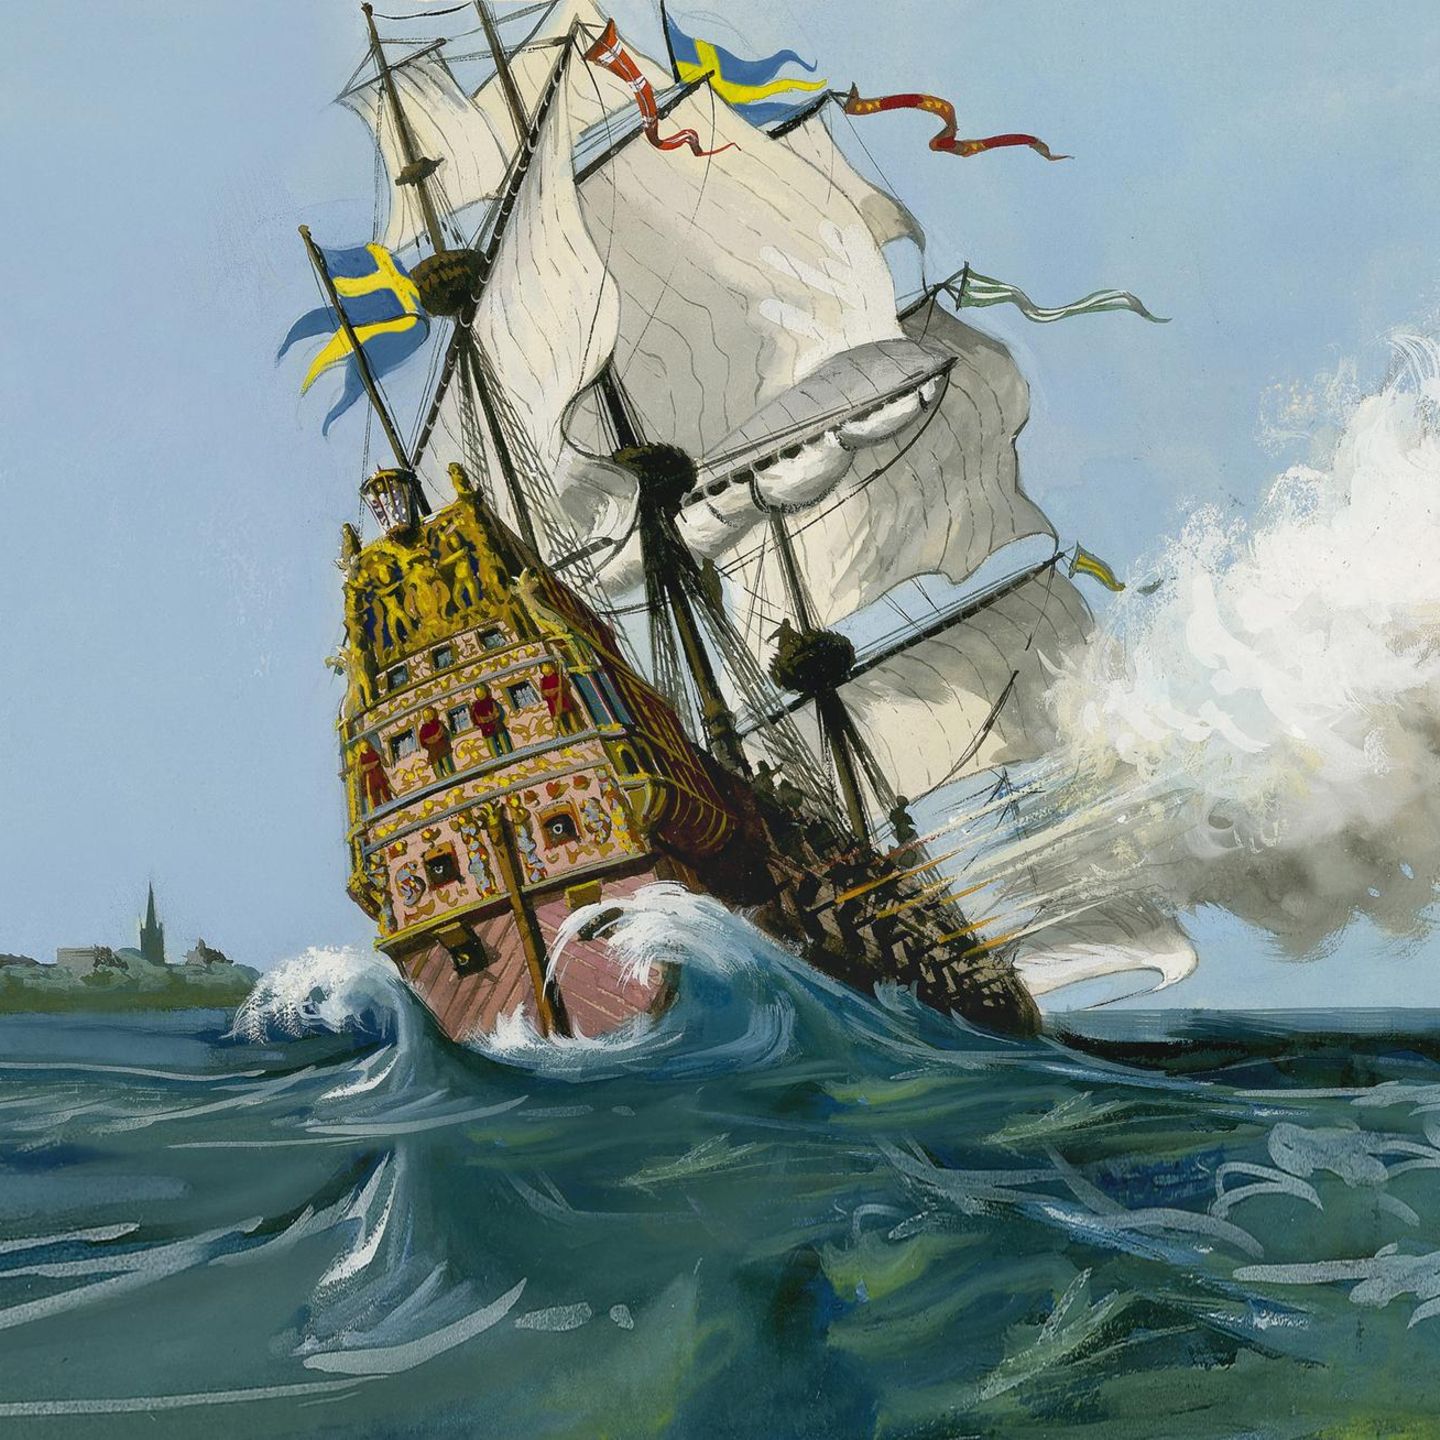 Ölgemälde des Schlachtschiffs "Vasa" unter vollen Segeln auf See mit starker Neigung nach links